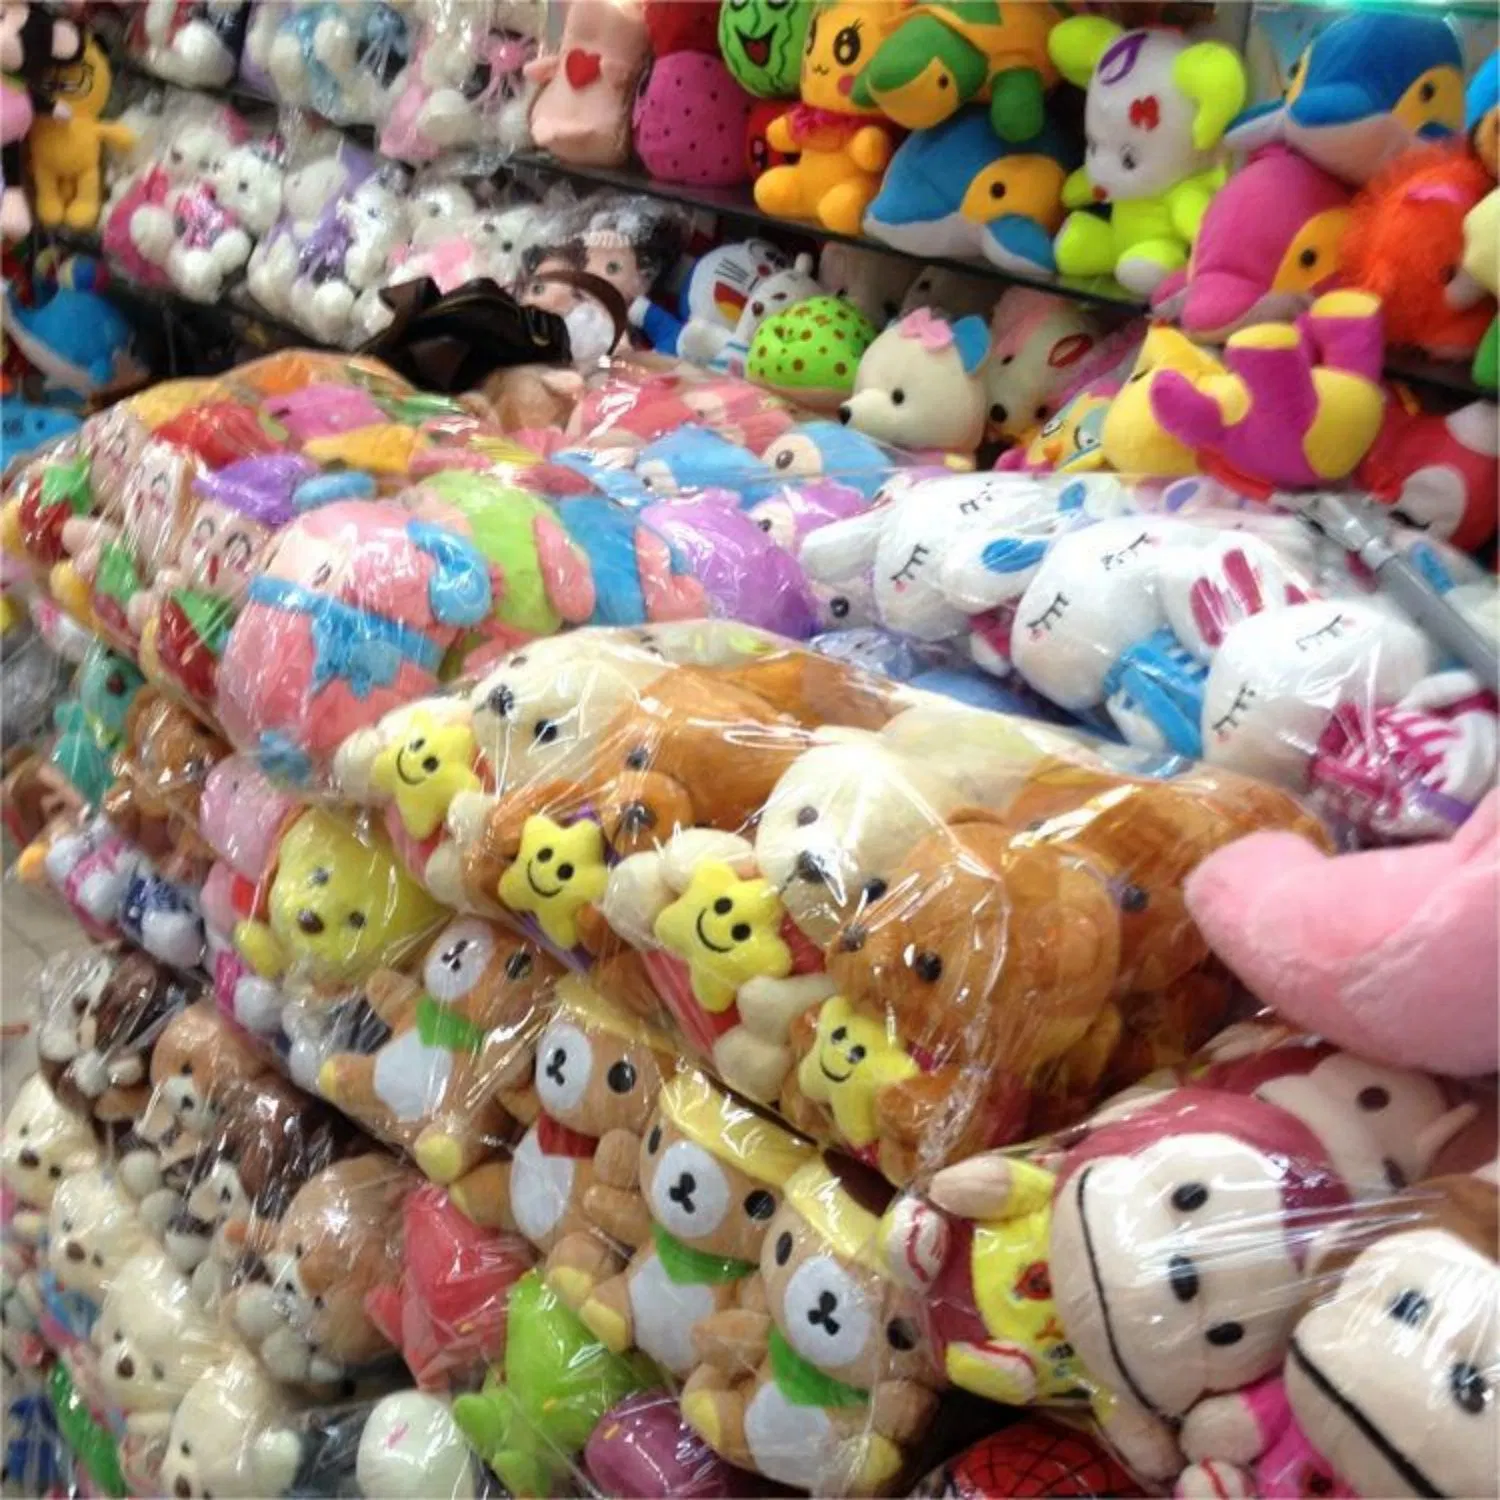 Для изготовителей оборудования на заводе Специализированные мягкие мультфильма Toy детей игрушки оптовая торговля игрушками мультфильм мягкая плюшевая кукла шикарные рисунка символа шикарные символов производителя в Китае